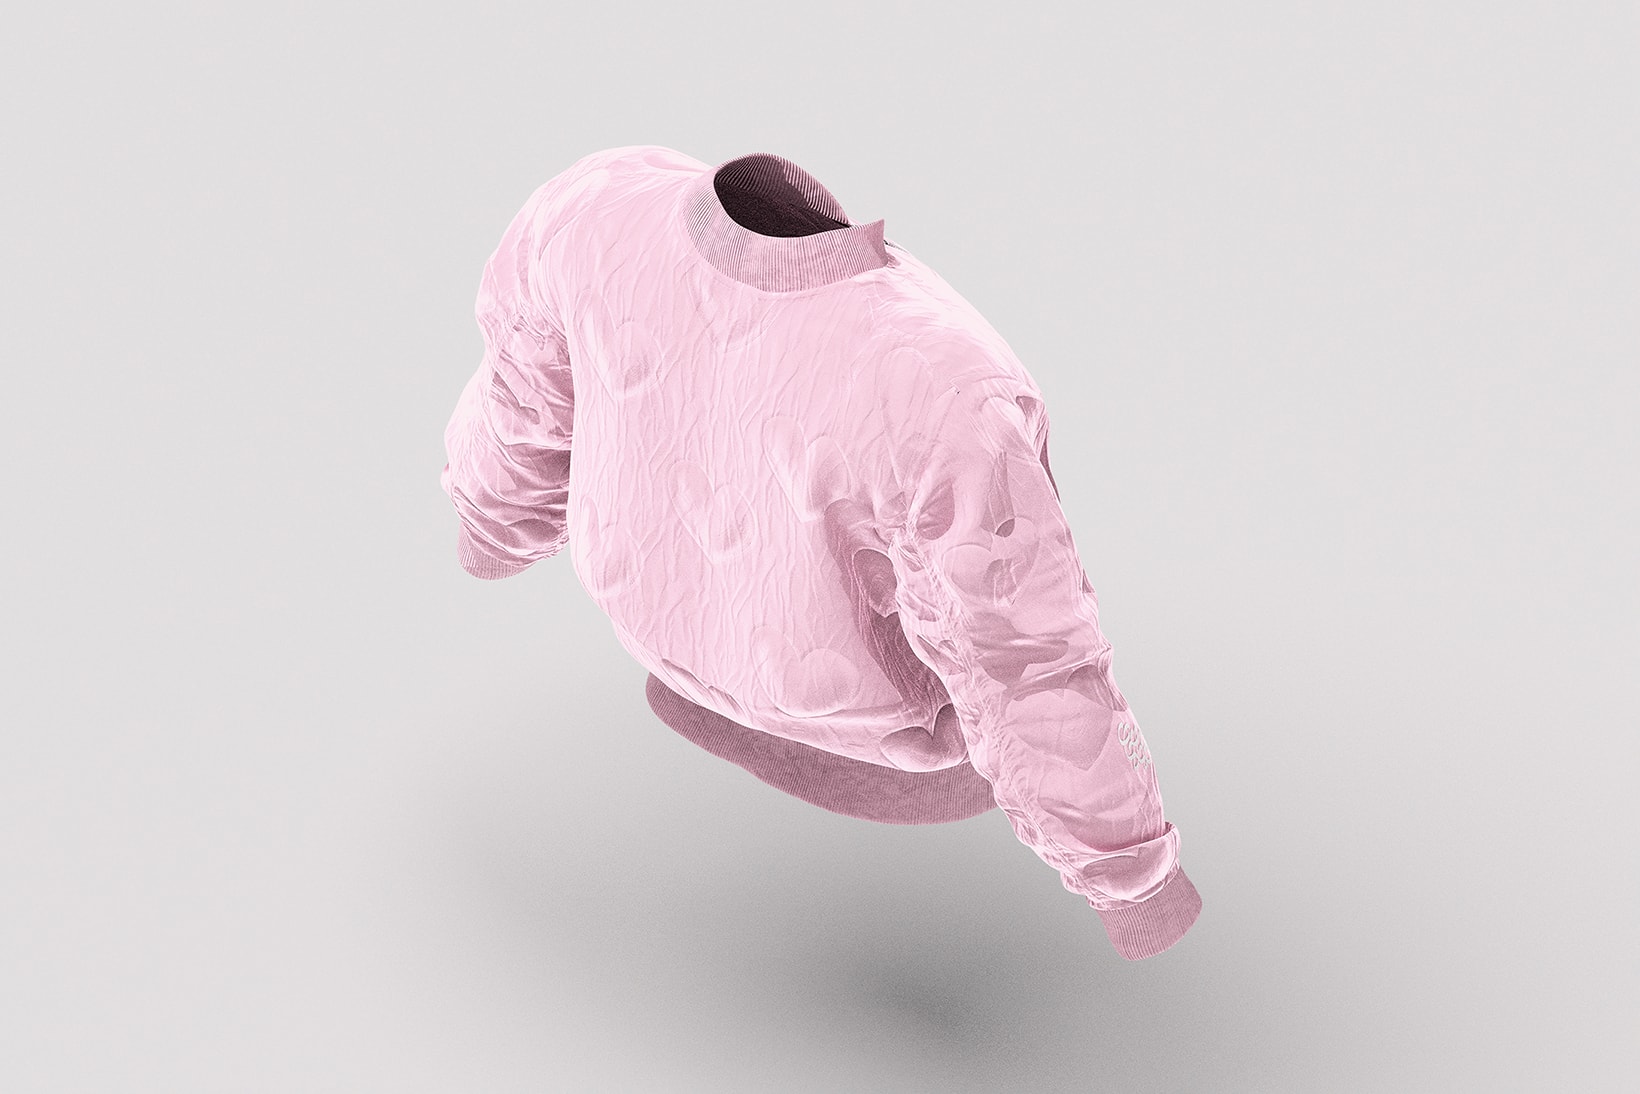 drake certified lover boy album merch pink jacket white cap nike